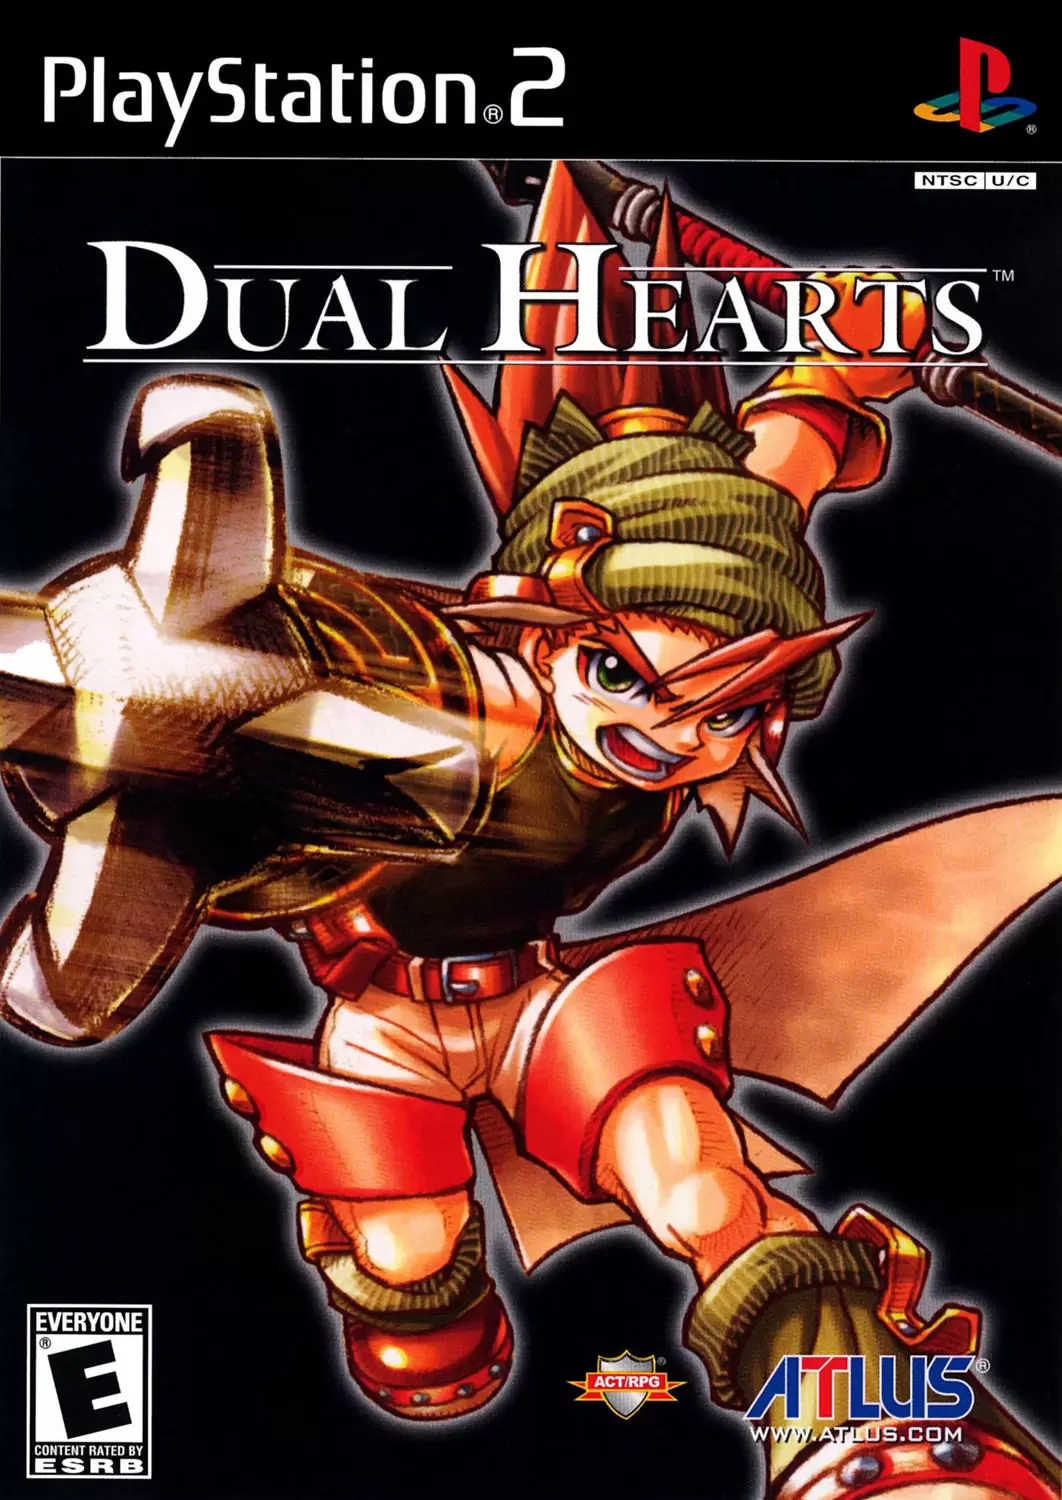 PS2 Games - Dual Hearts